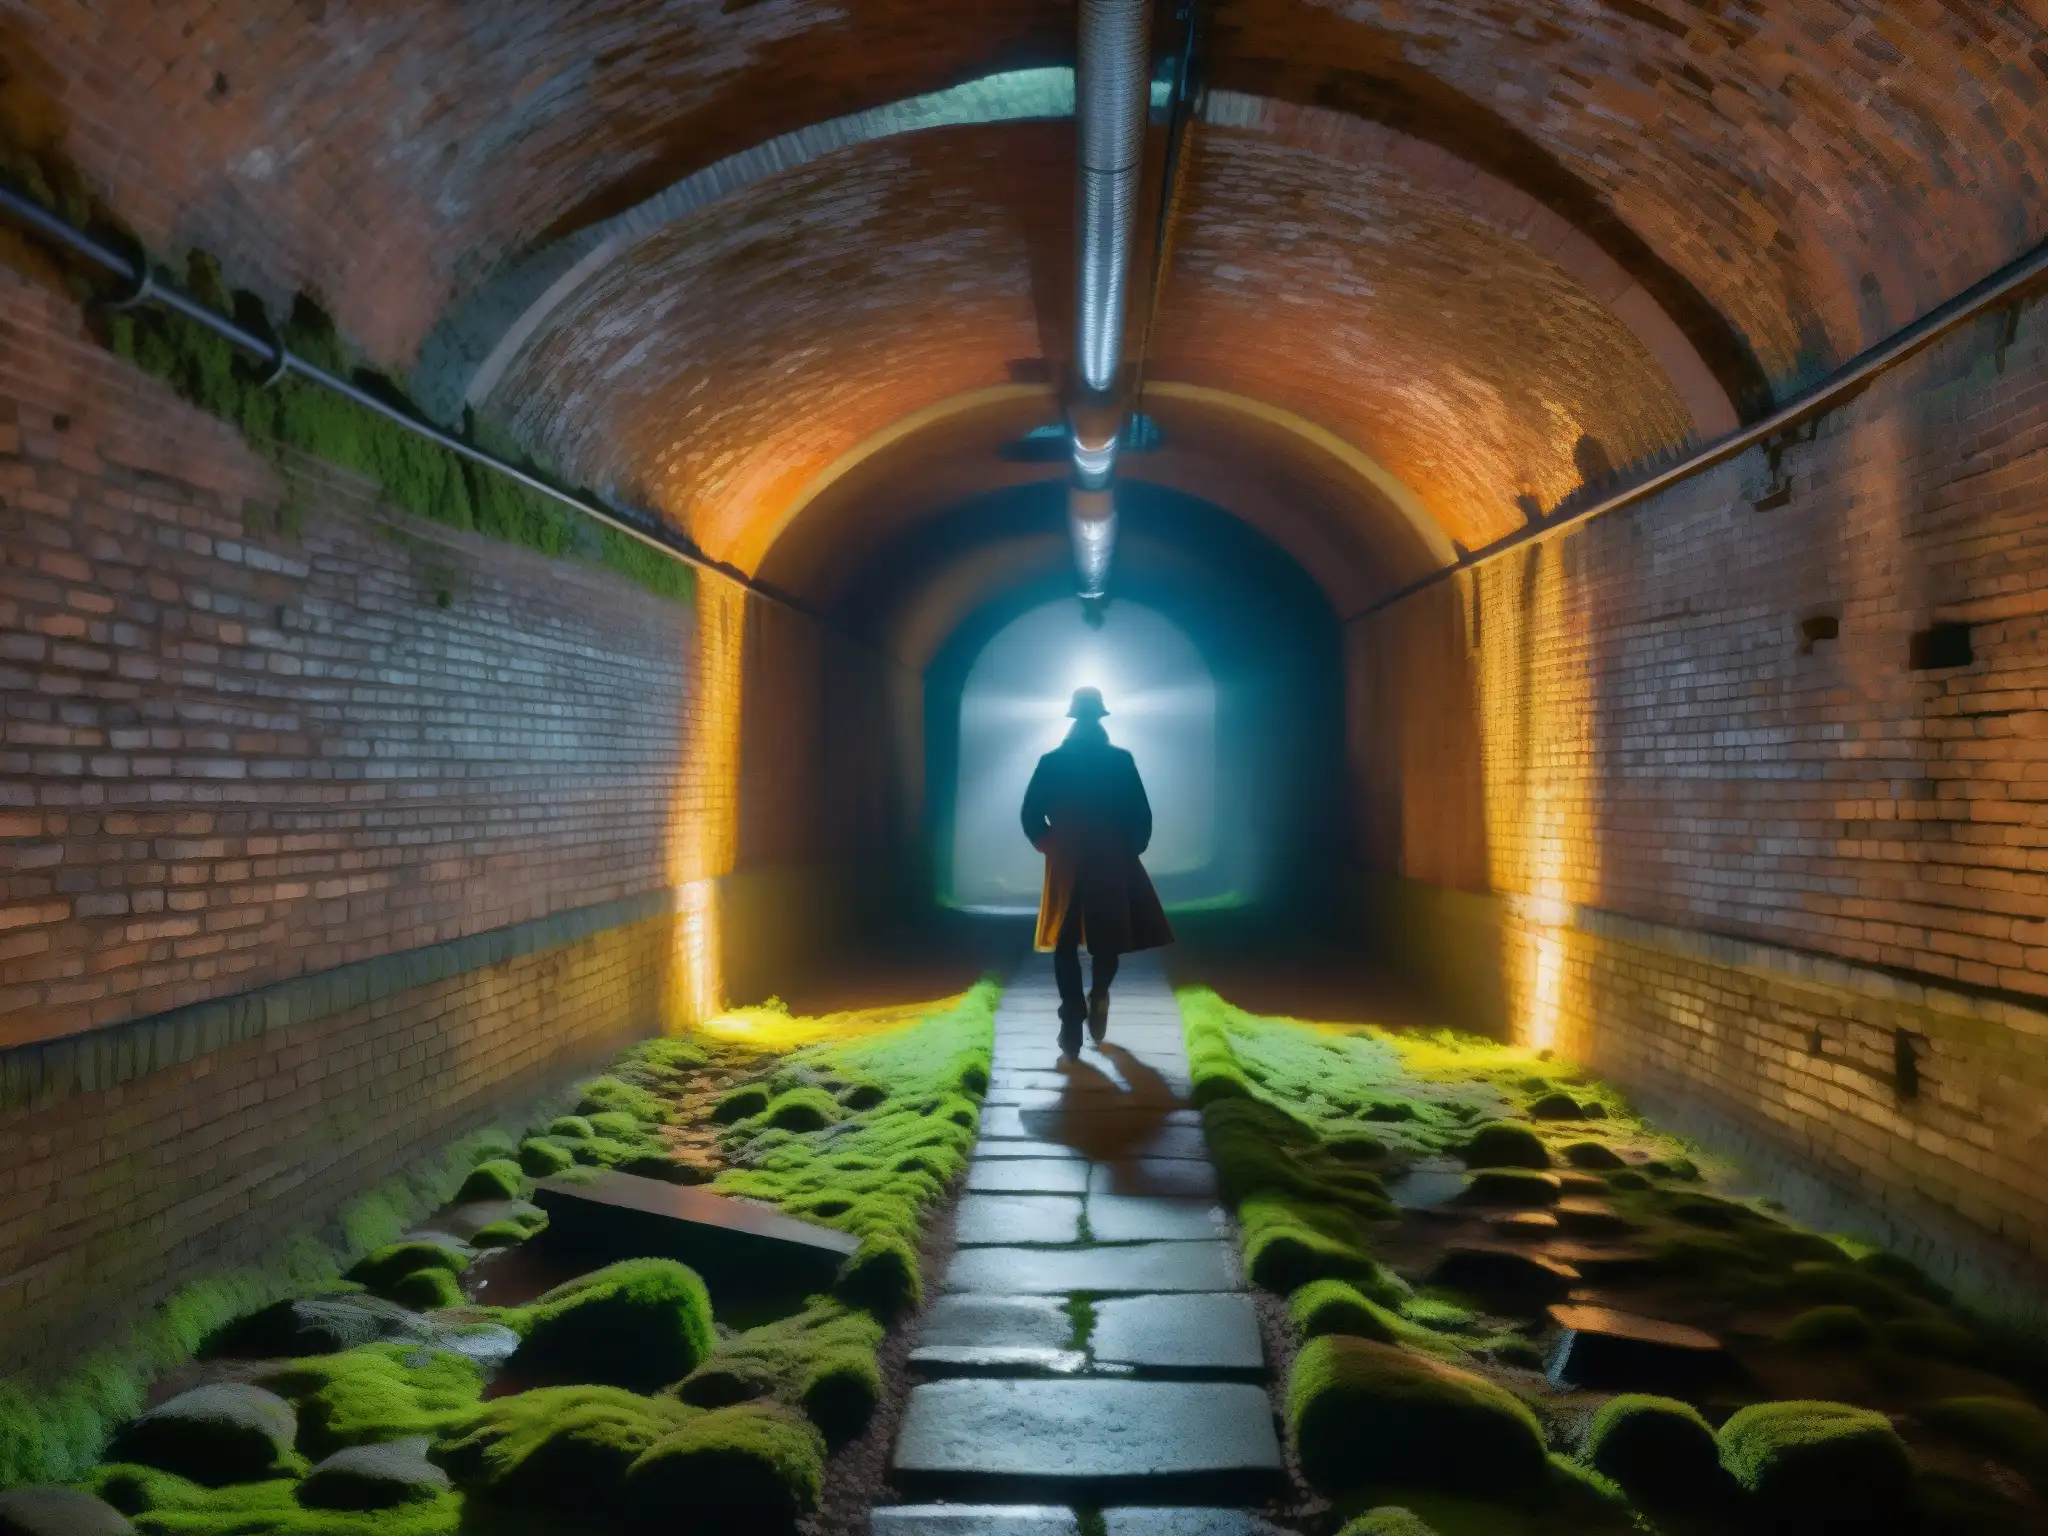 Explorando los túneles subterráneos de Portland, la luz tenue revela la historia oculta entre muros de ladrillo cubiertos de musgo